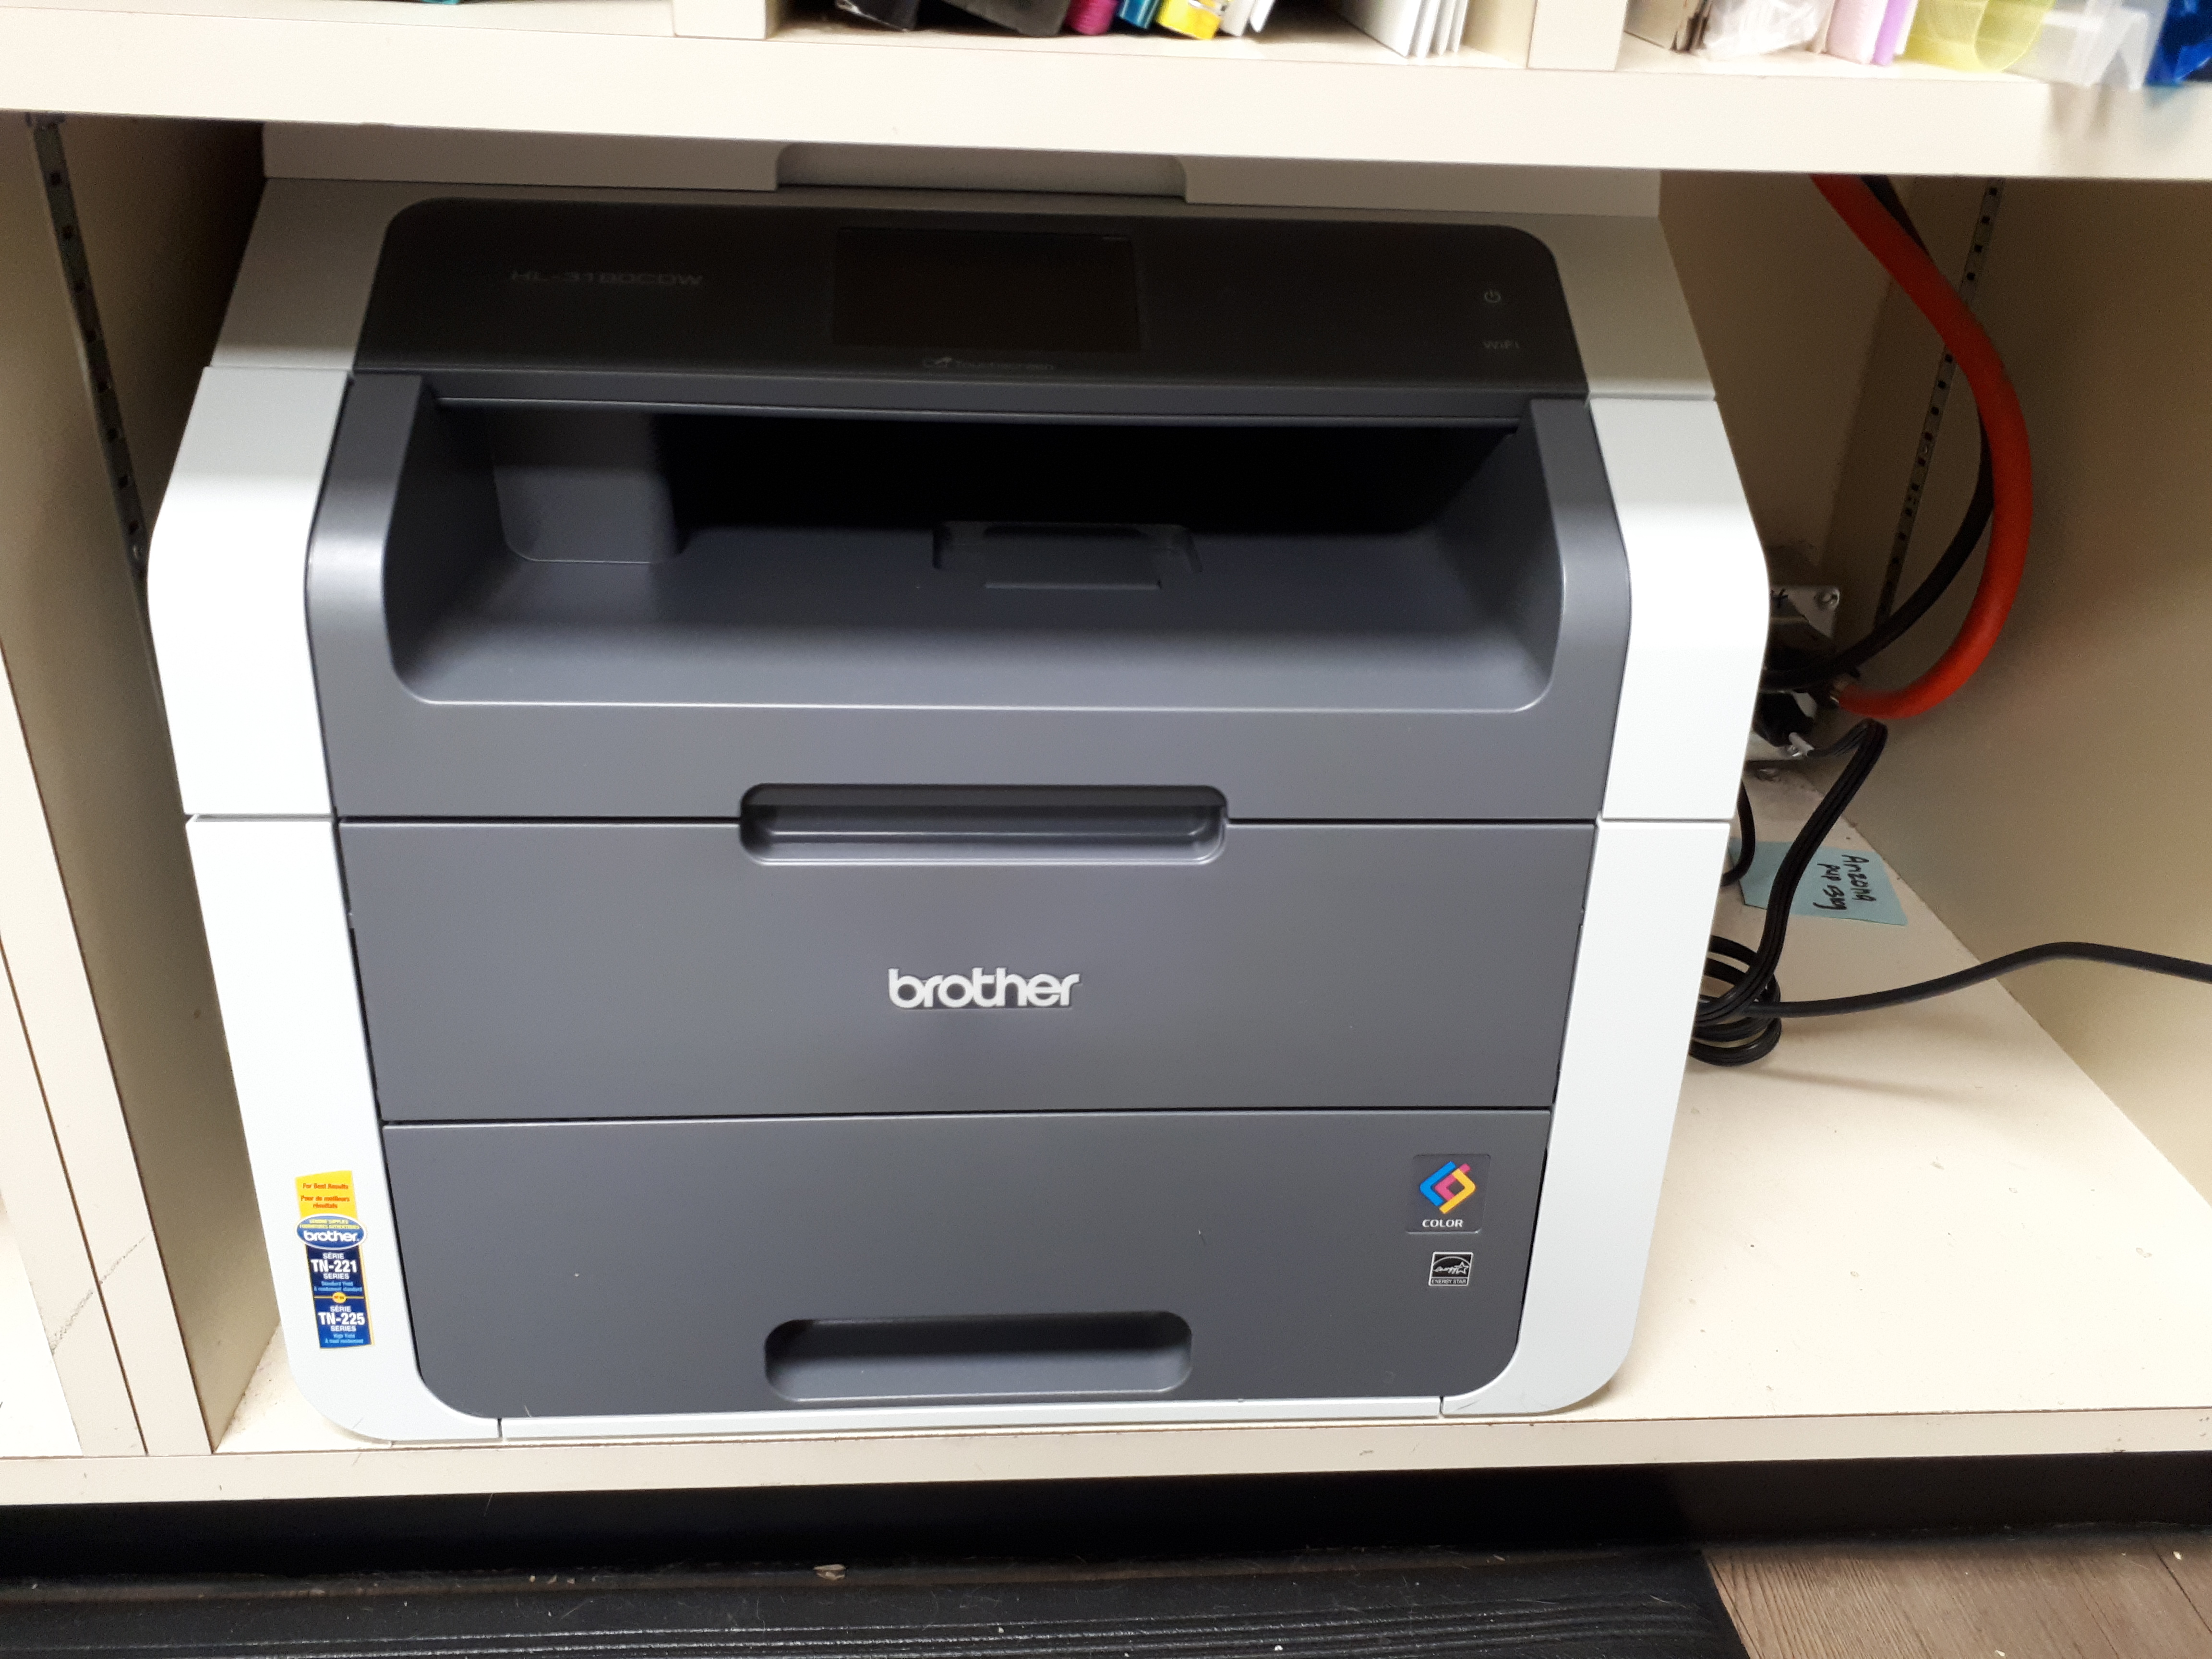 brother printer setup